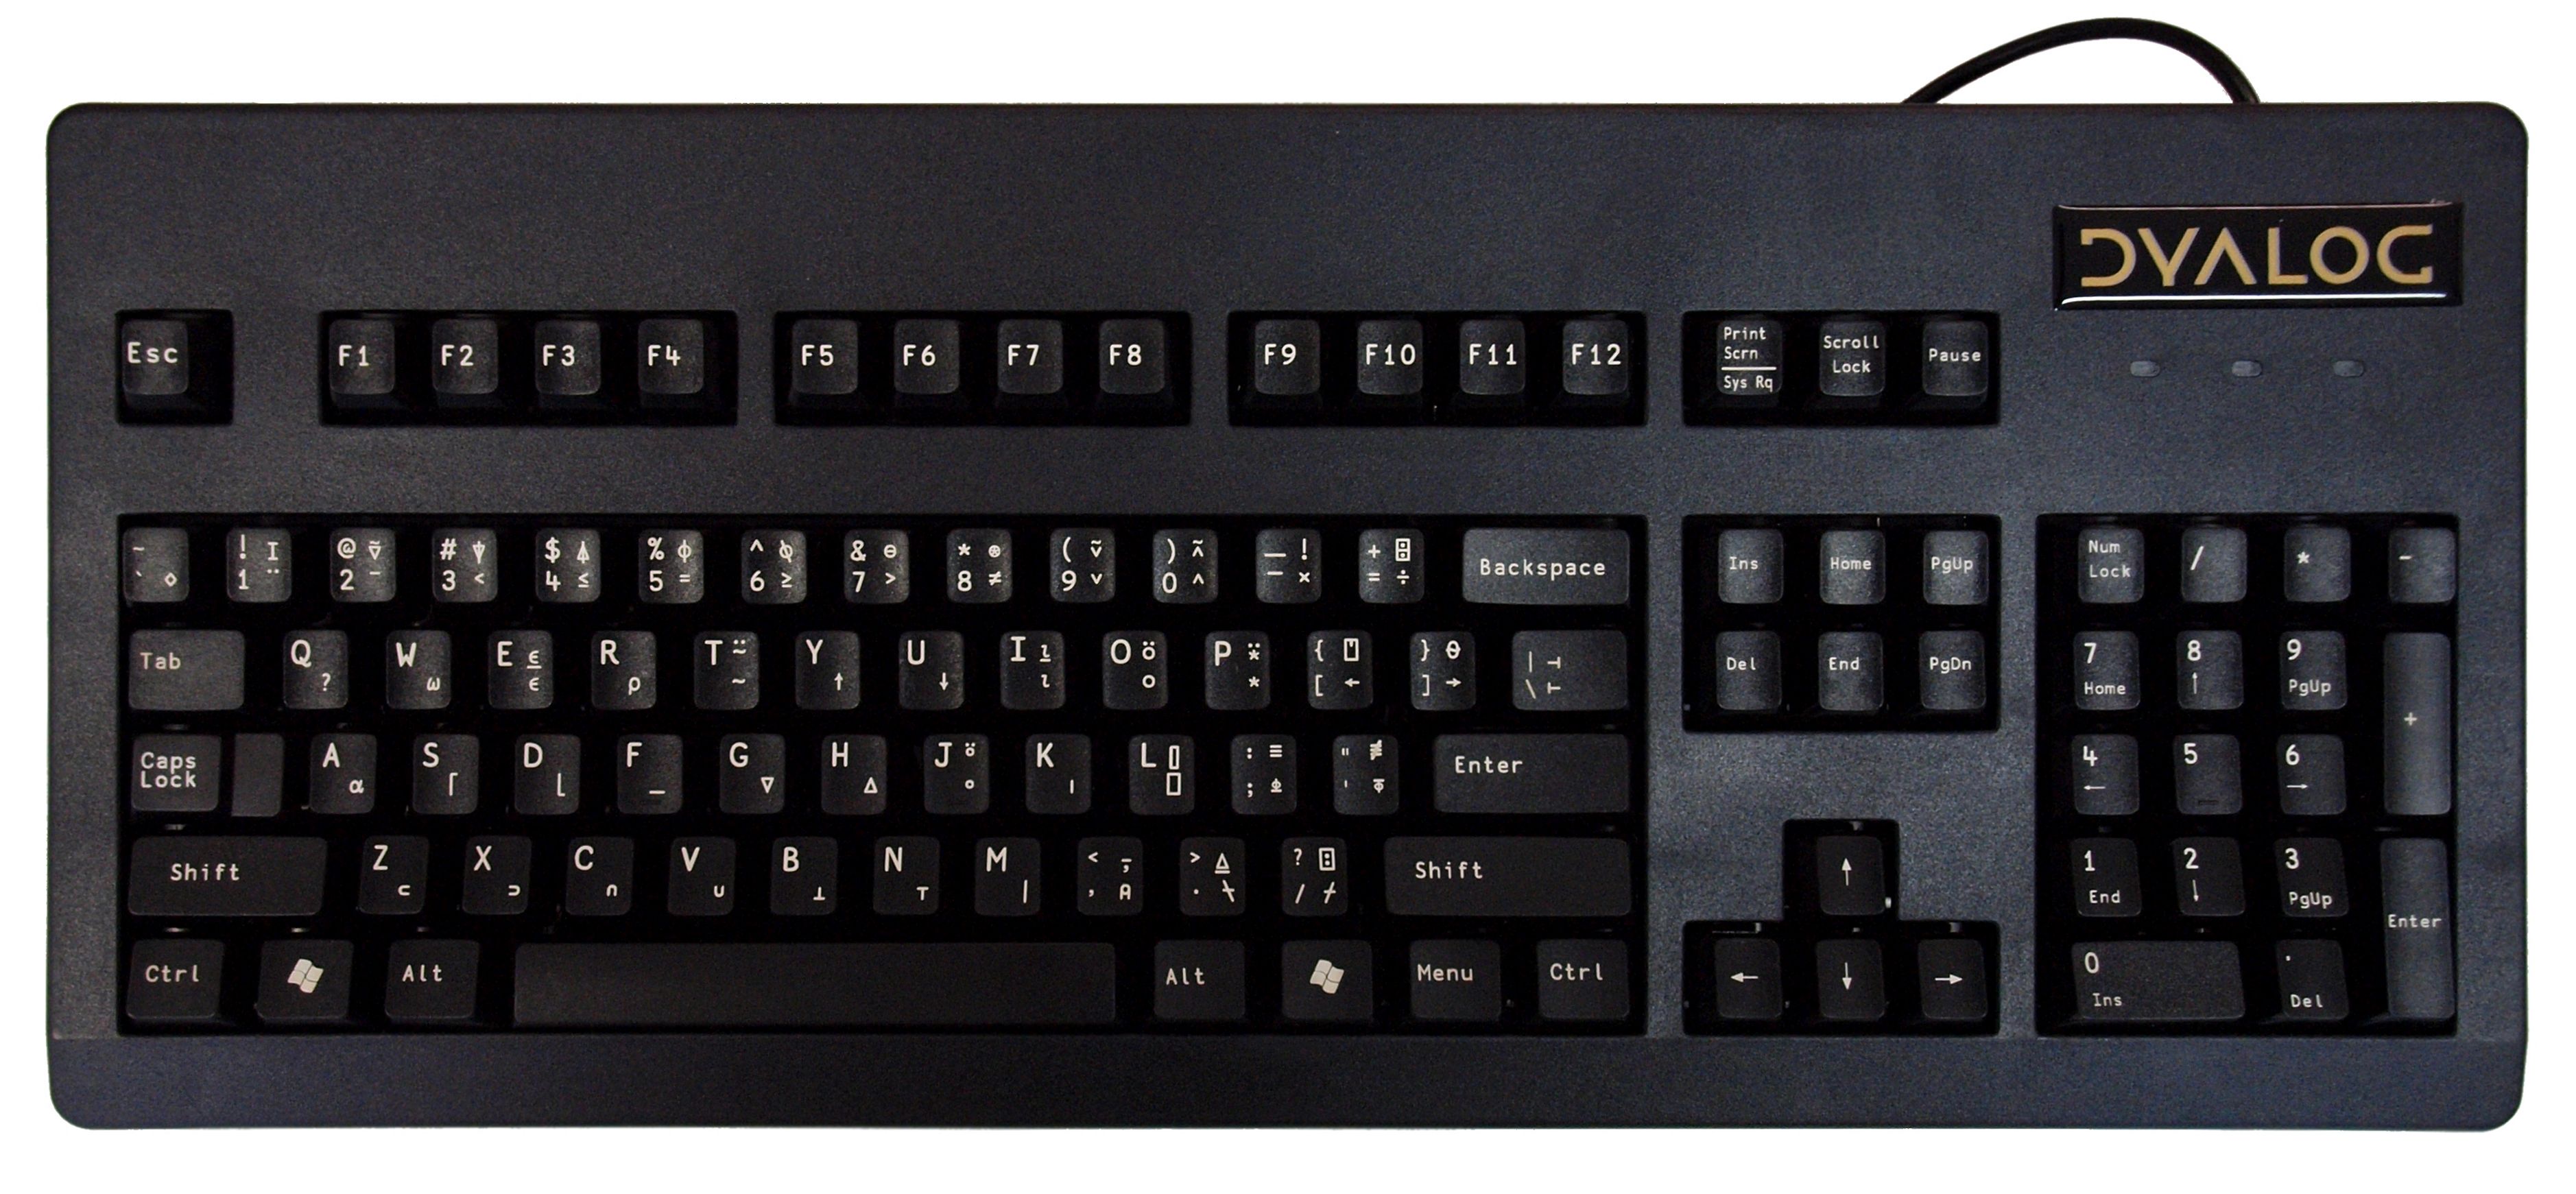 Dyalog keyboard - US version